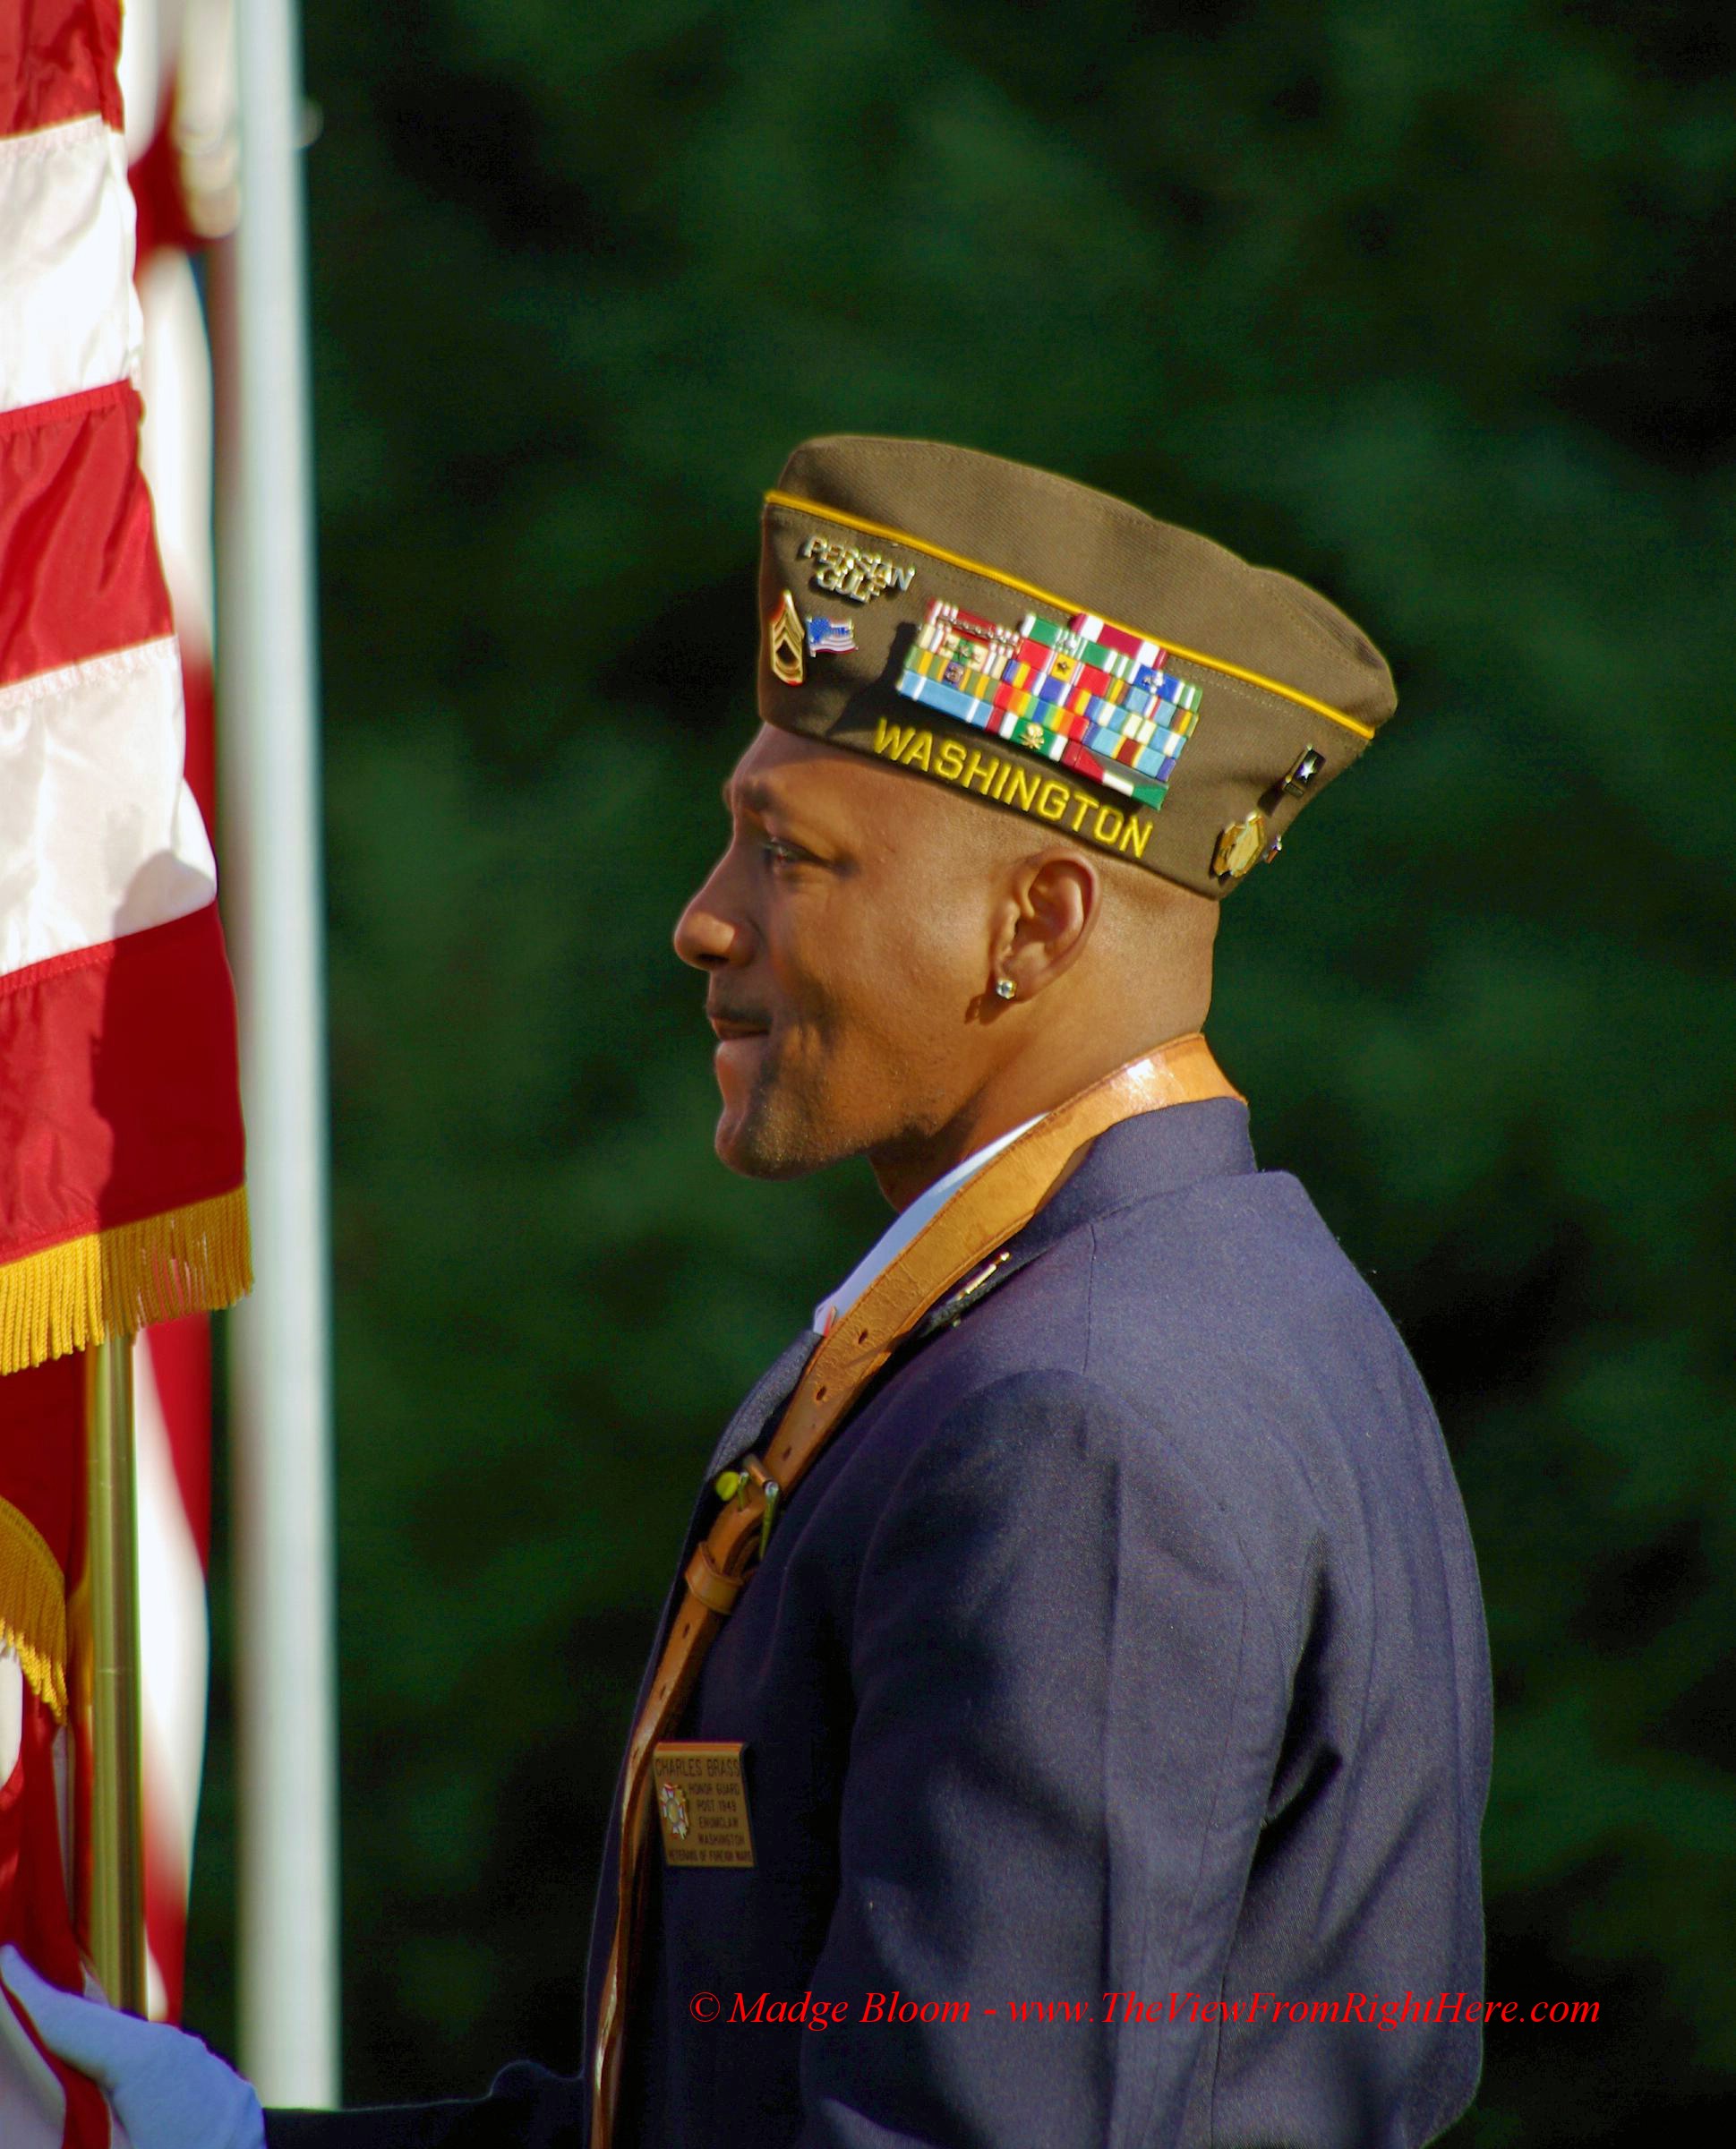 11.11.11 – A Veteran Honoring Veterans